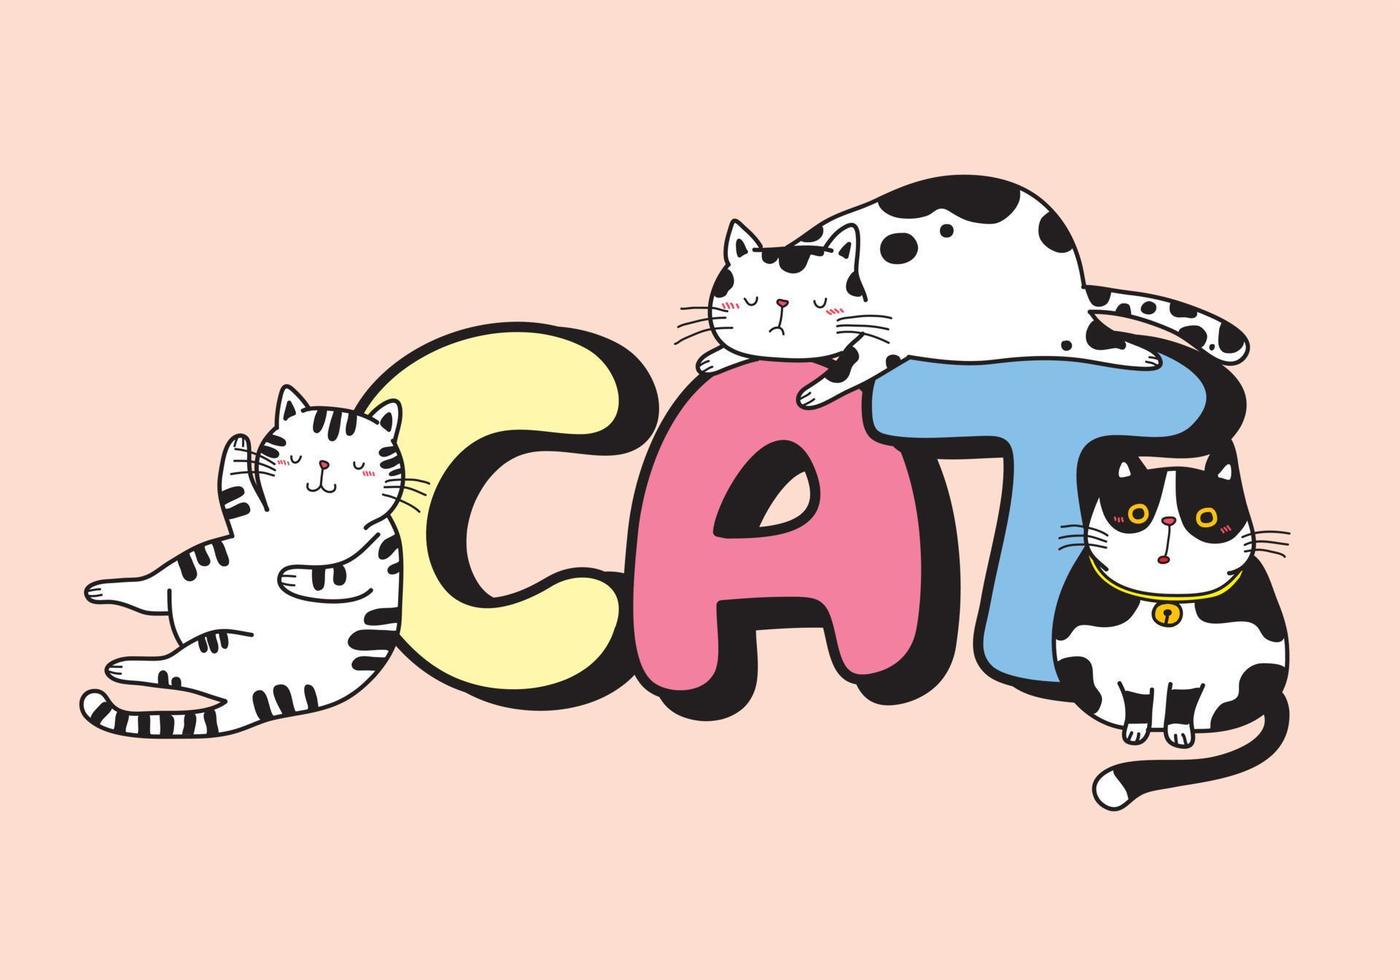 dessin vectoriel de 3 chats dormant sur le mot chat dans des tons pastel.